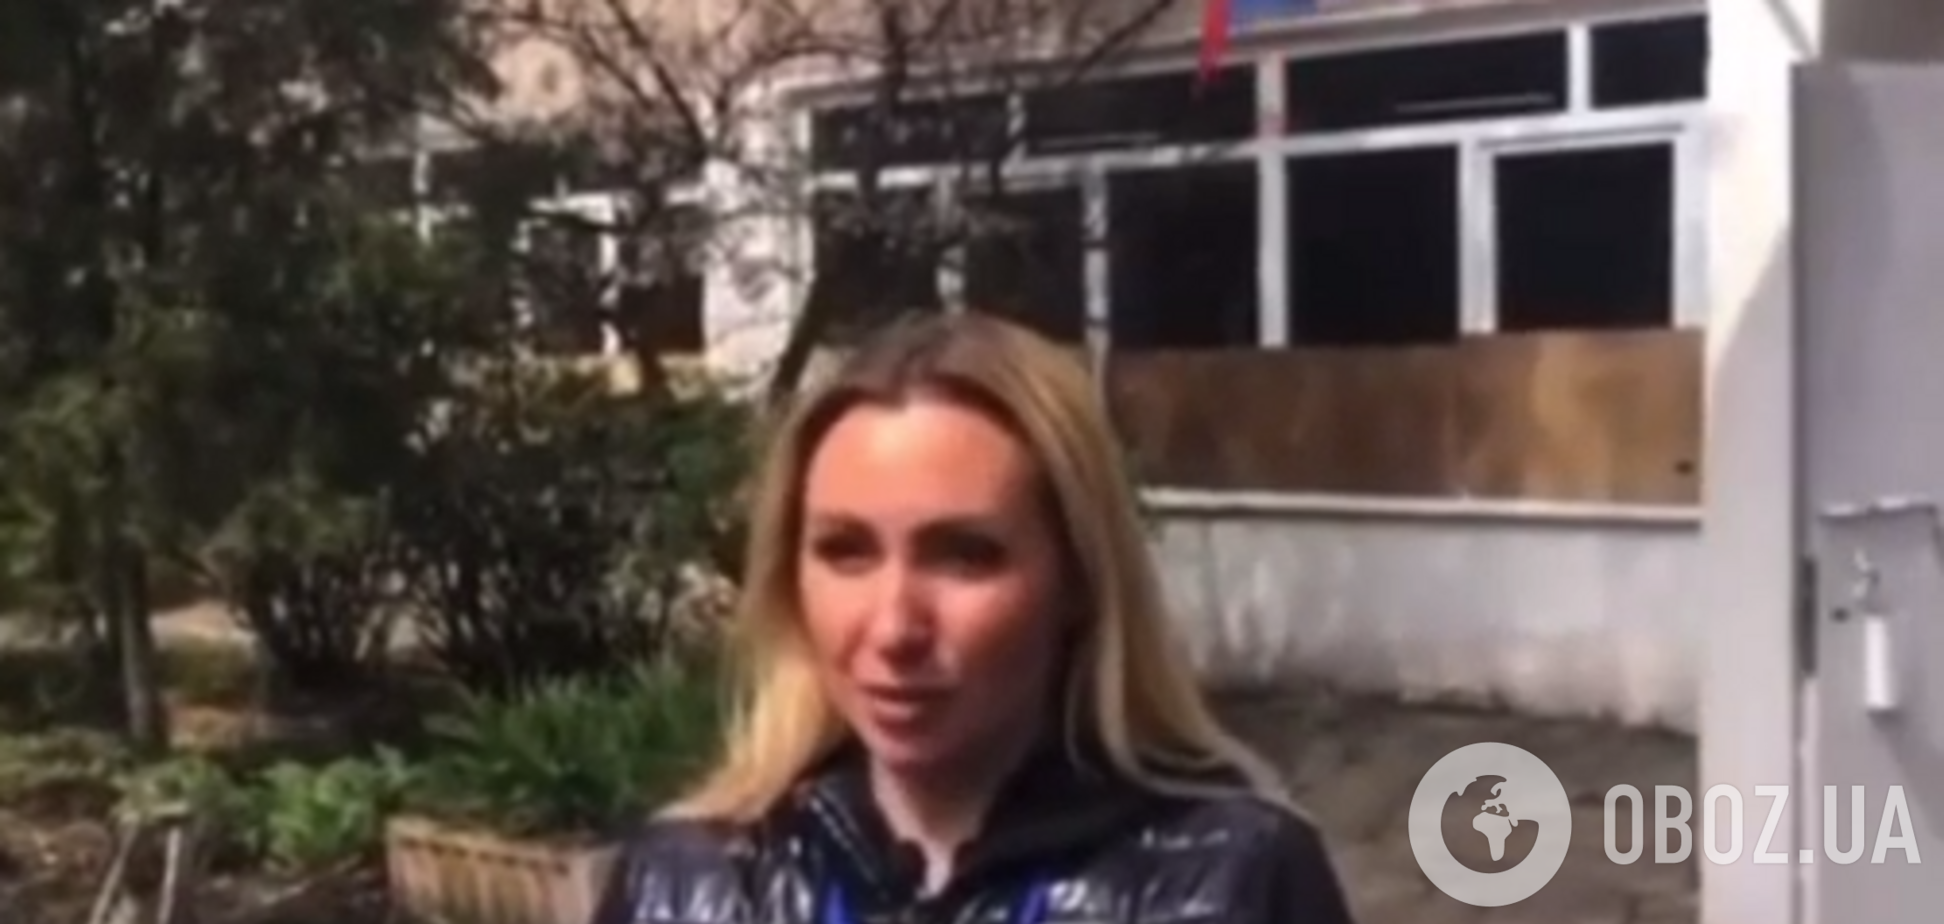 Получила 'звездочку' от оккупантов: в Мариуполе показали предавшую Украину депутатку ОПЗЖ. Видео